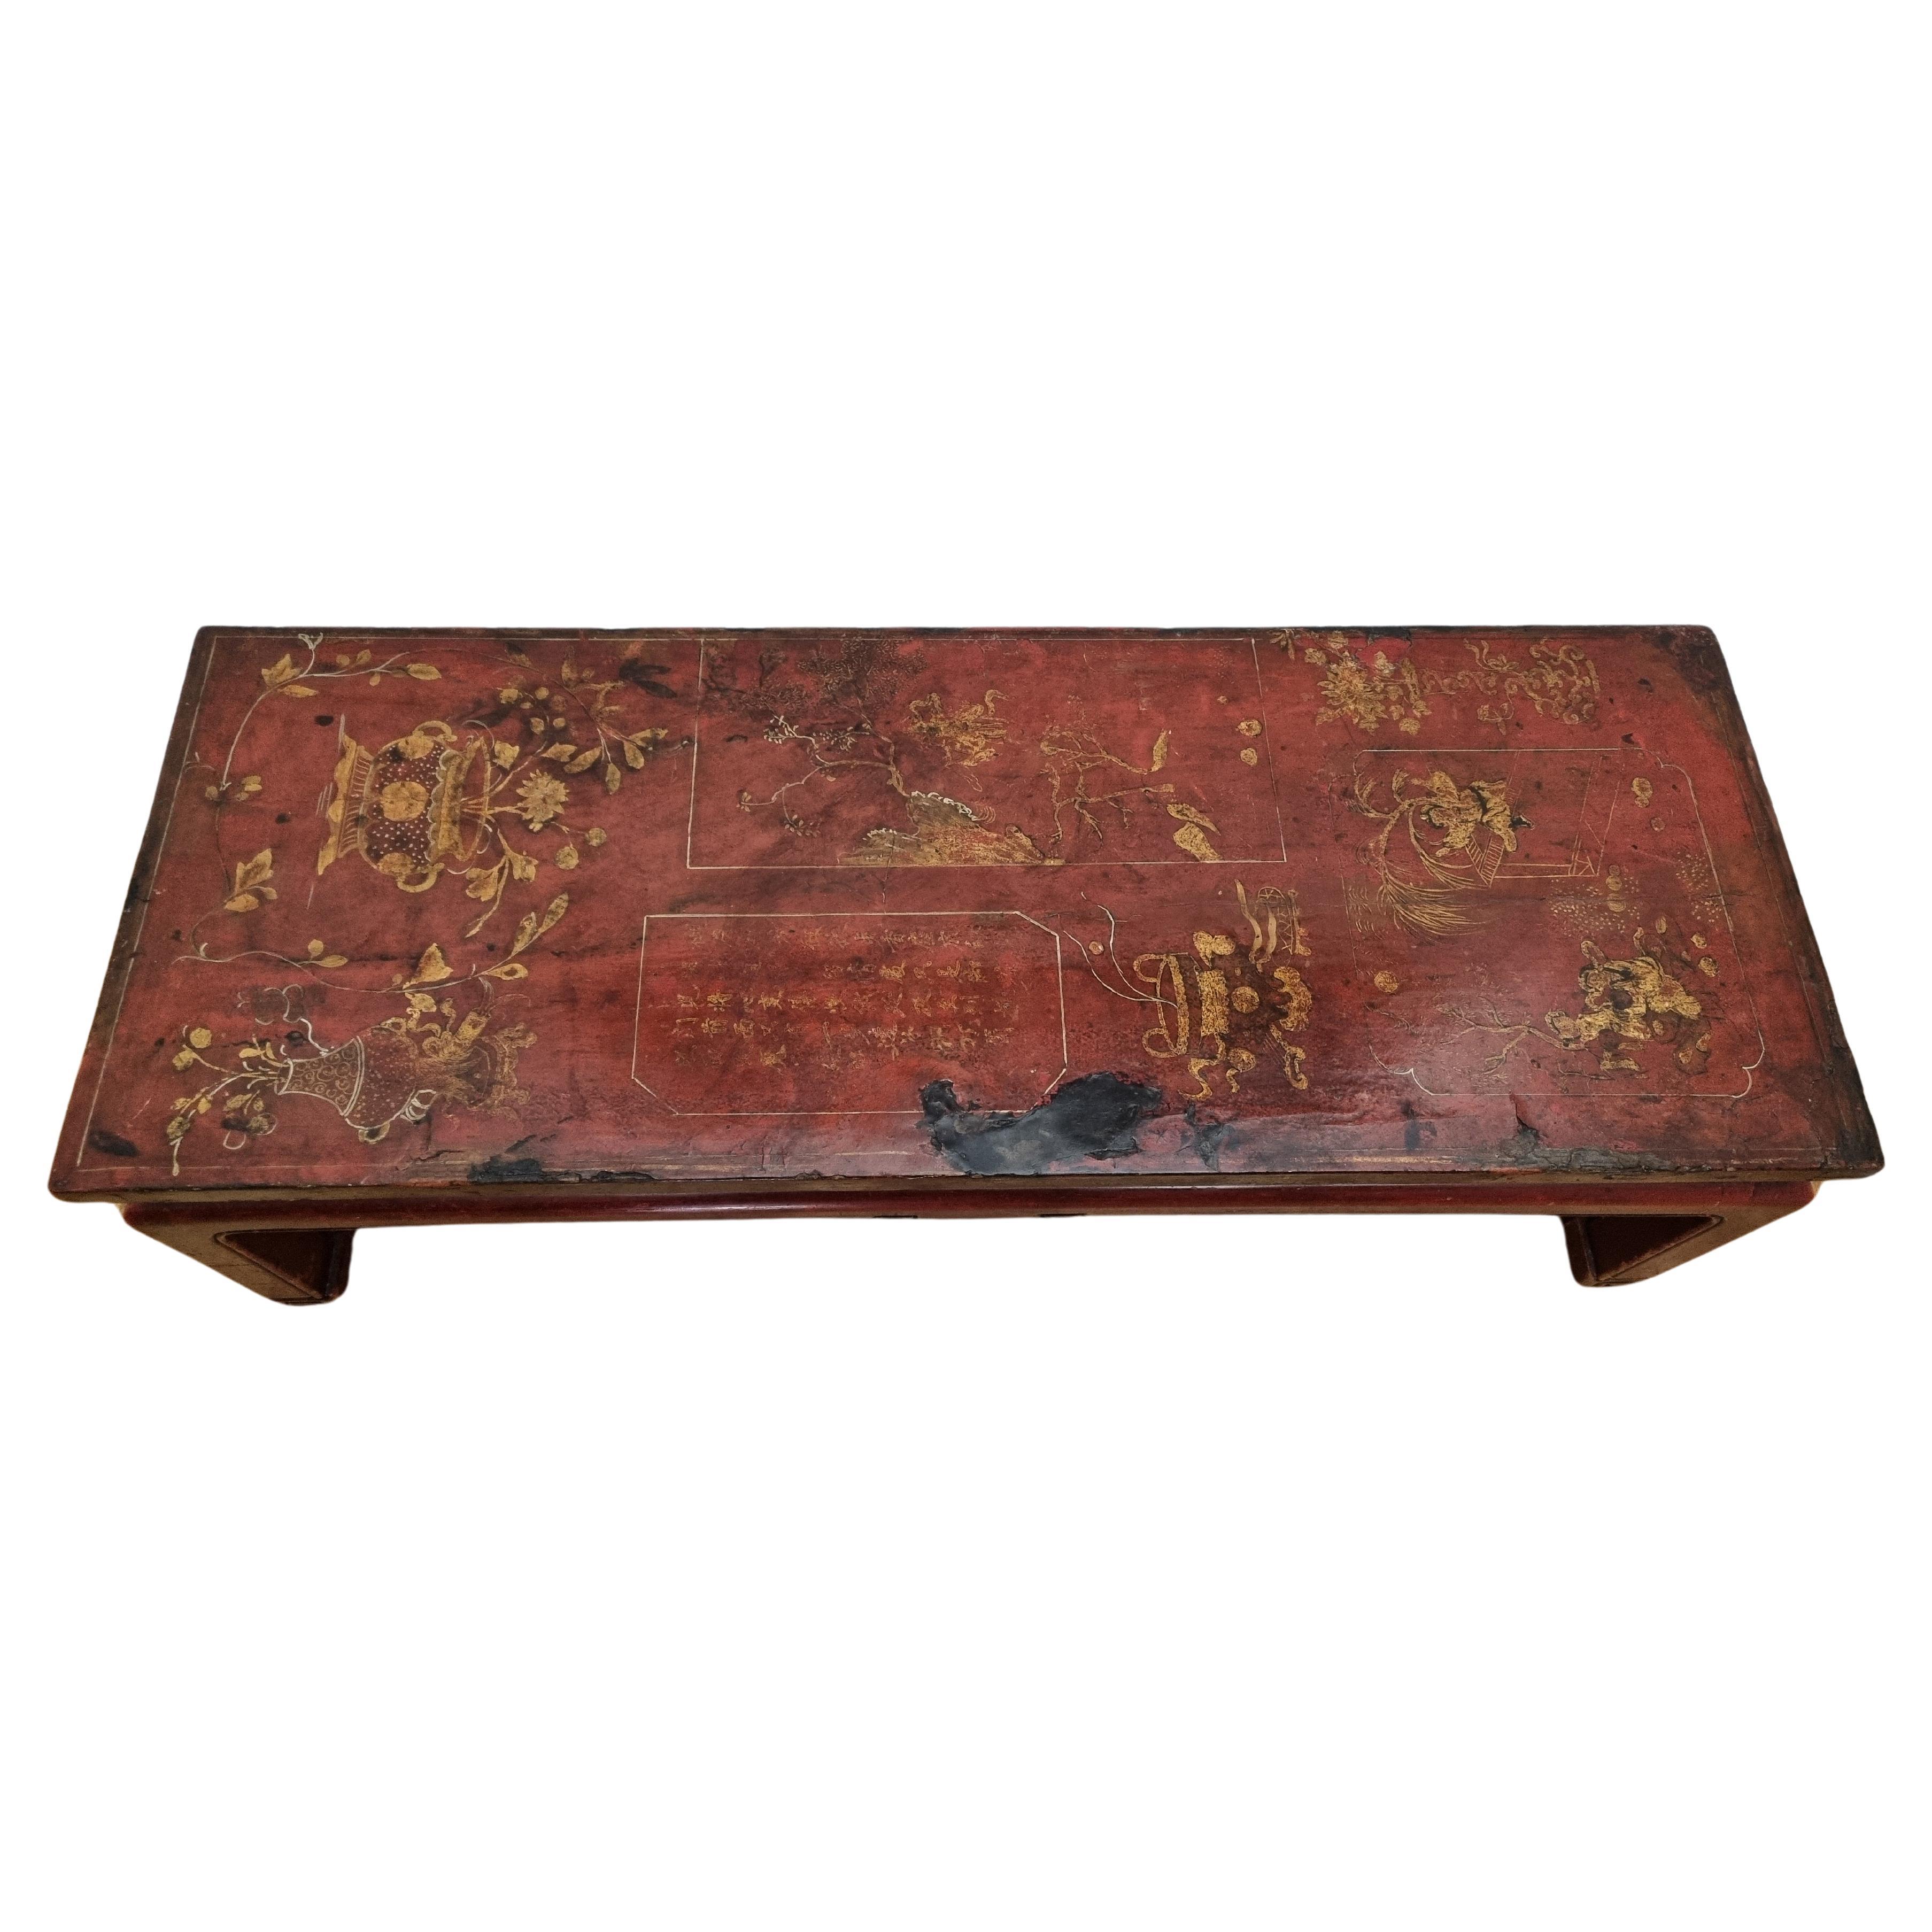 Table basse chinoise laquée rouge du 19ème siècle de la province de Shanxi